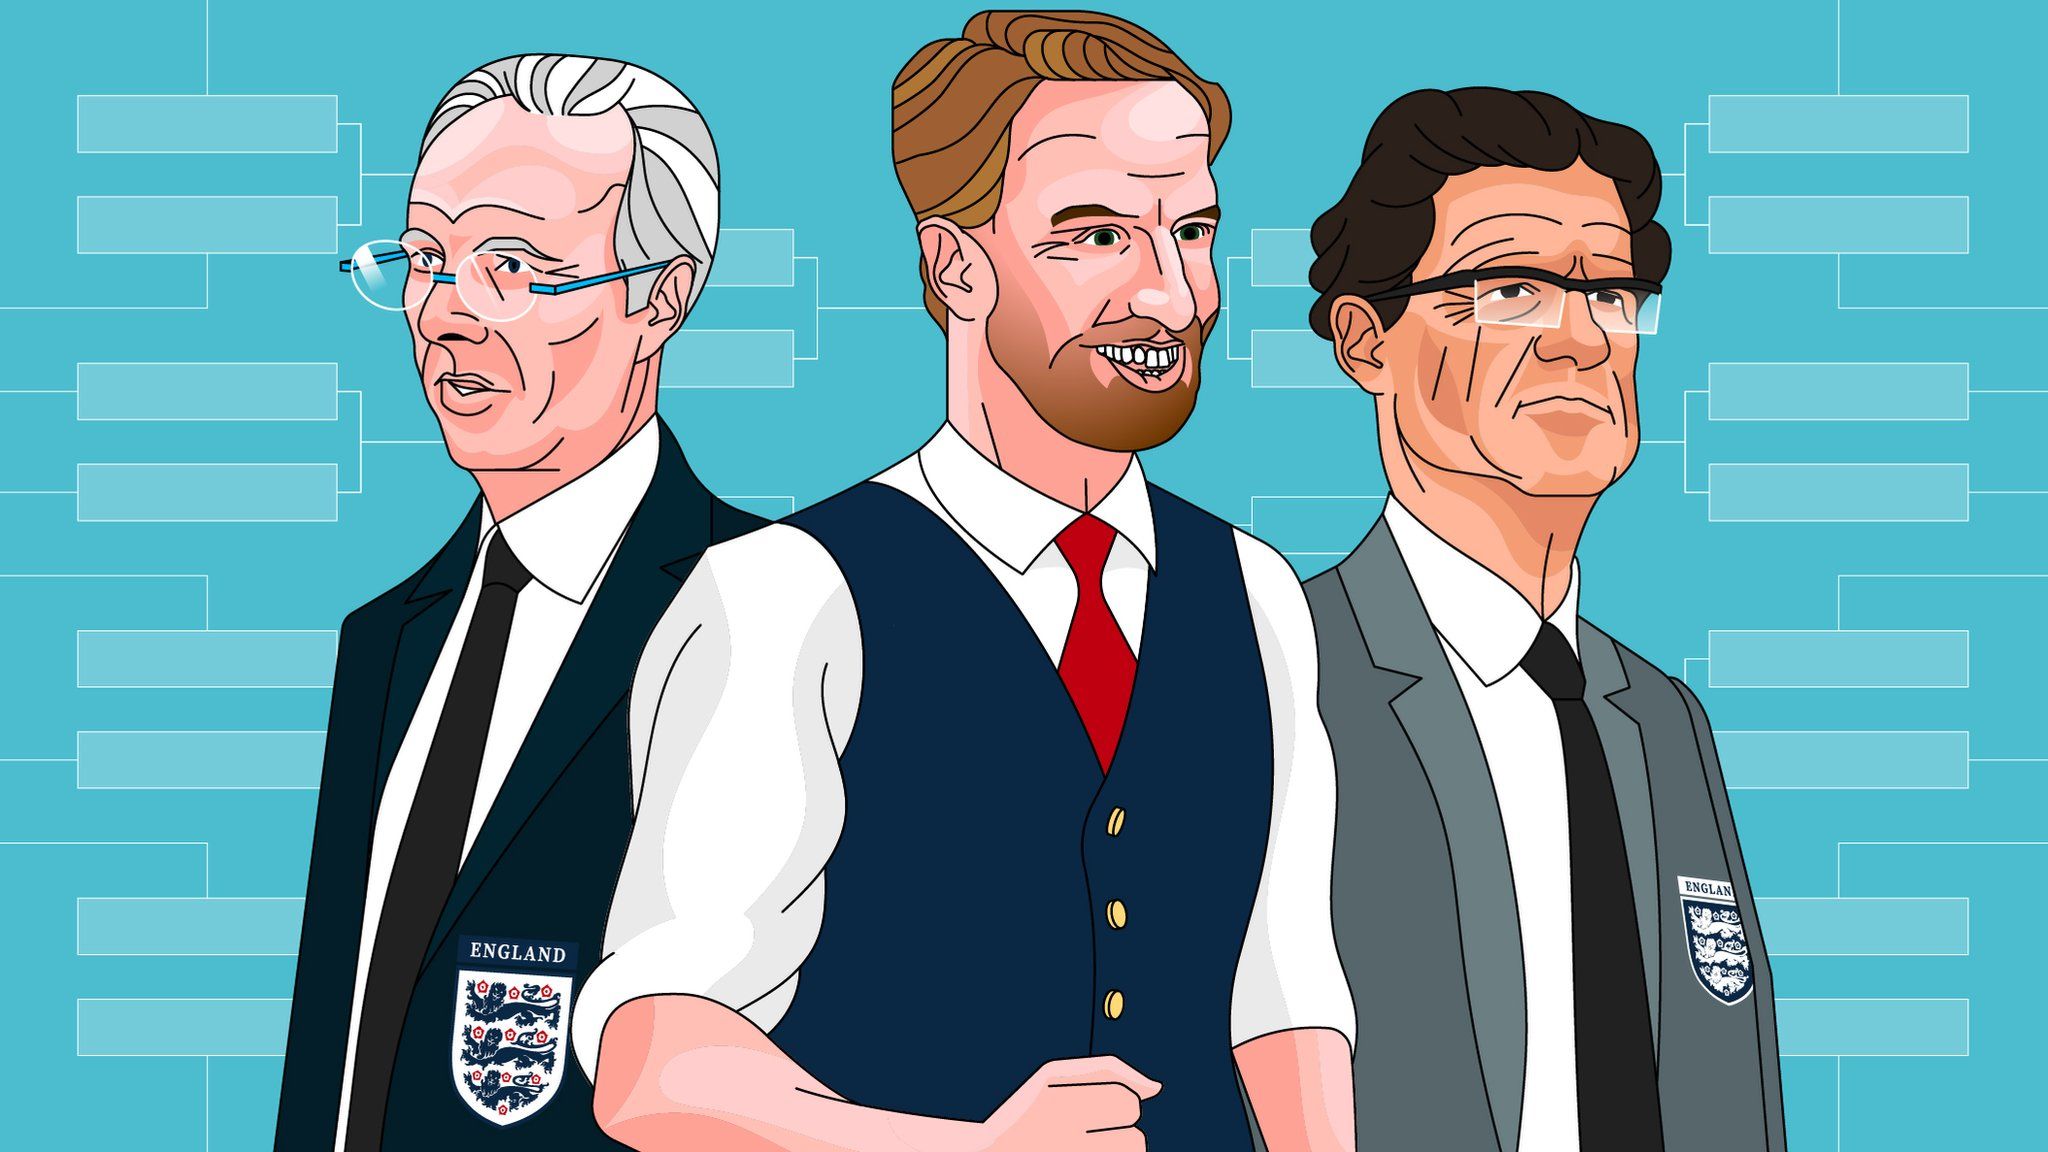 Illustration showing Sven-Goran Eriksson, Gareth Southgate and Fabio Capello